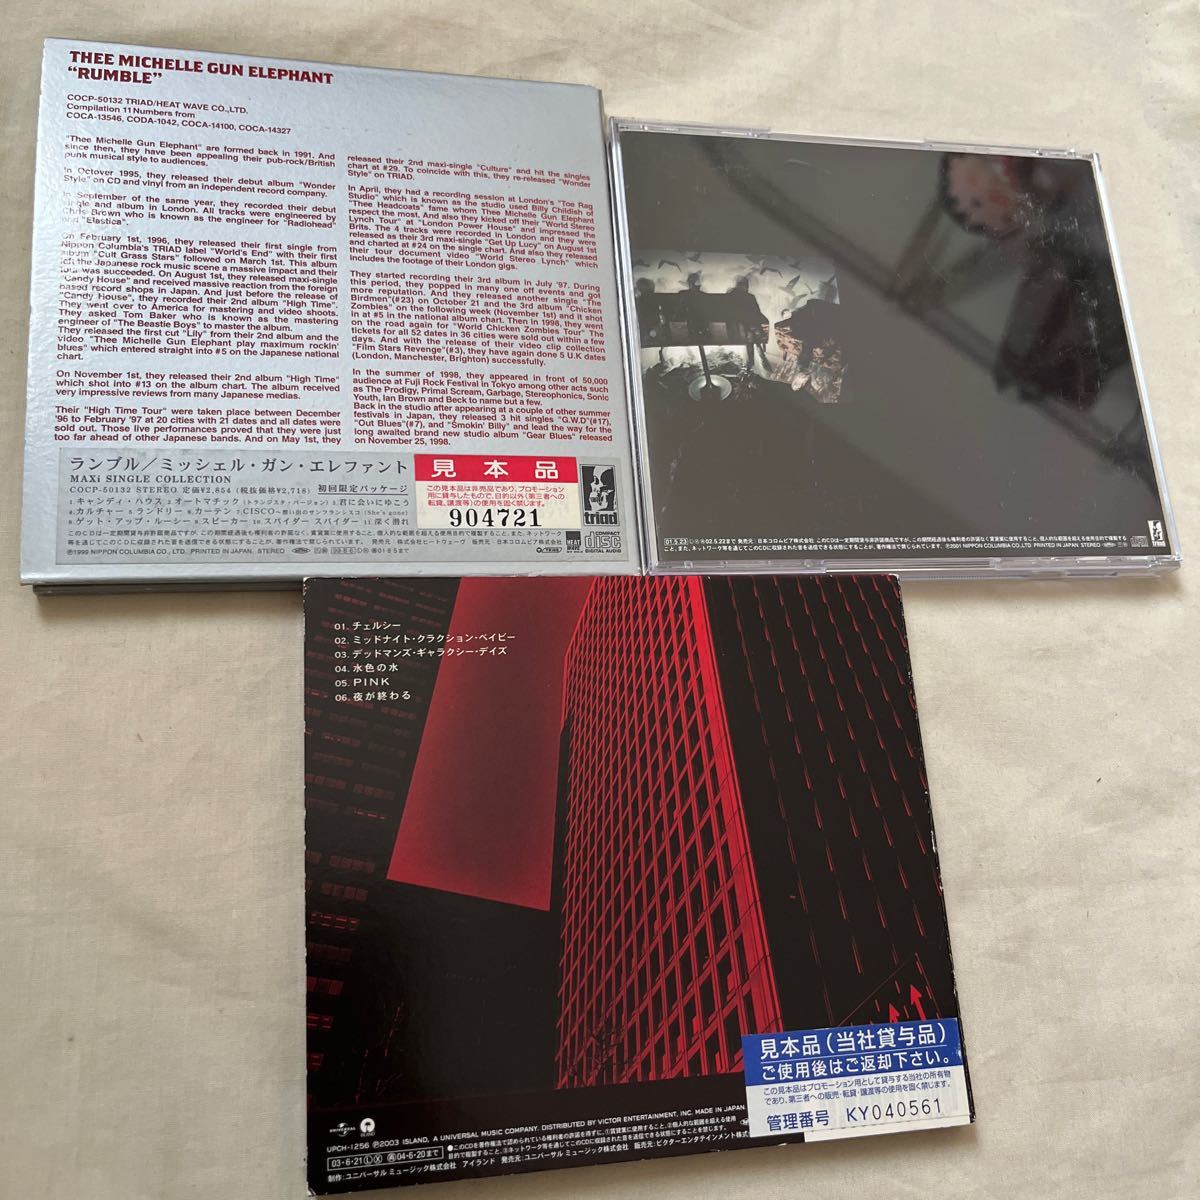 ミッシェル・ガン・エレファント CD3枚セット RUMBLE/ロデオ・タンデム・ビート・スペクター/SABRINA NO HEAVEN_画像2